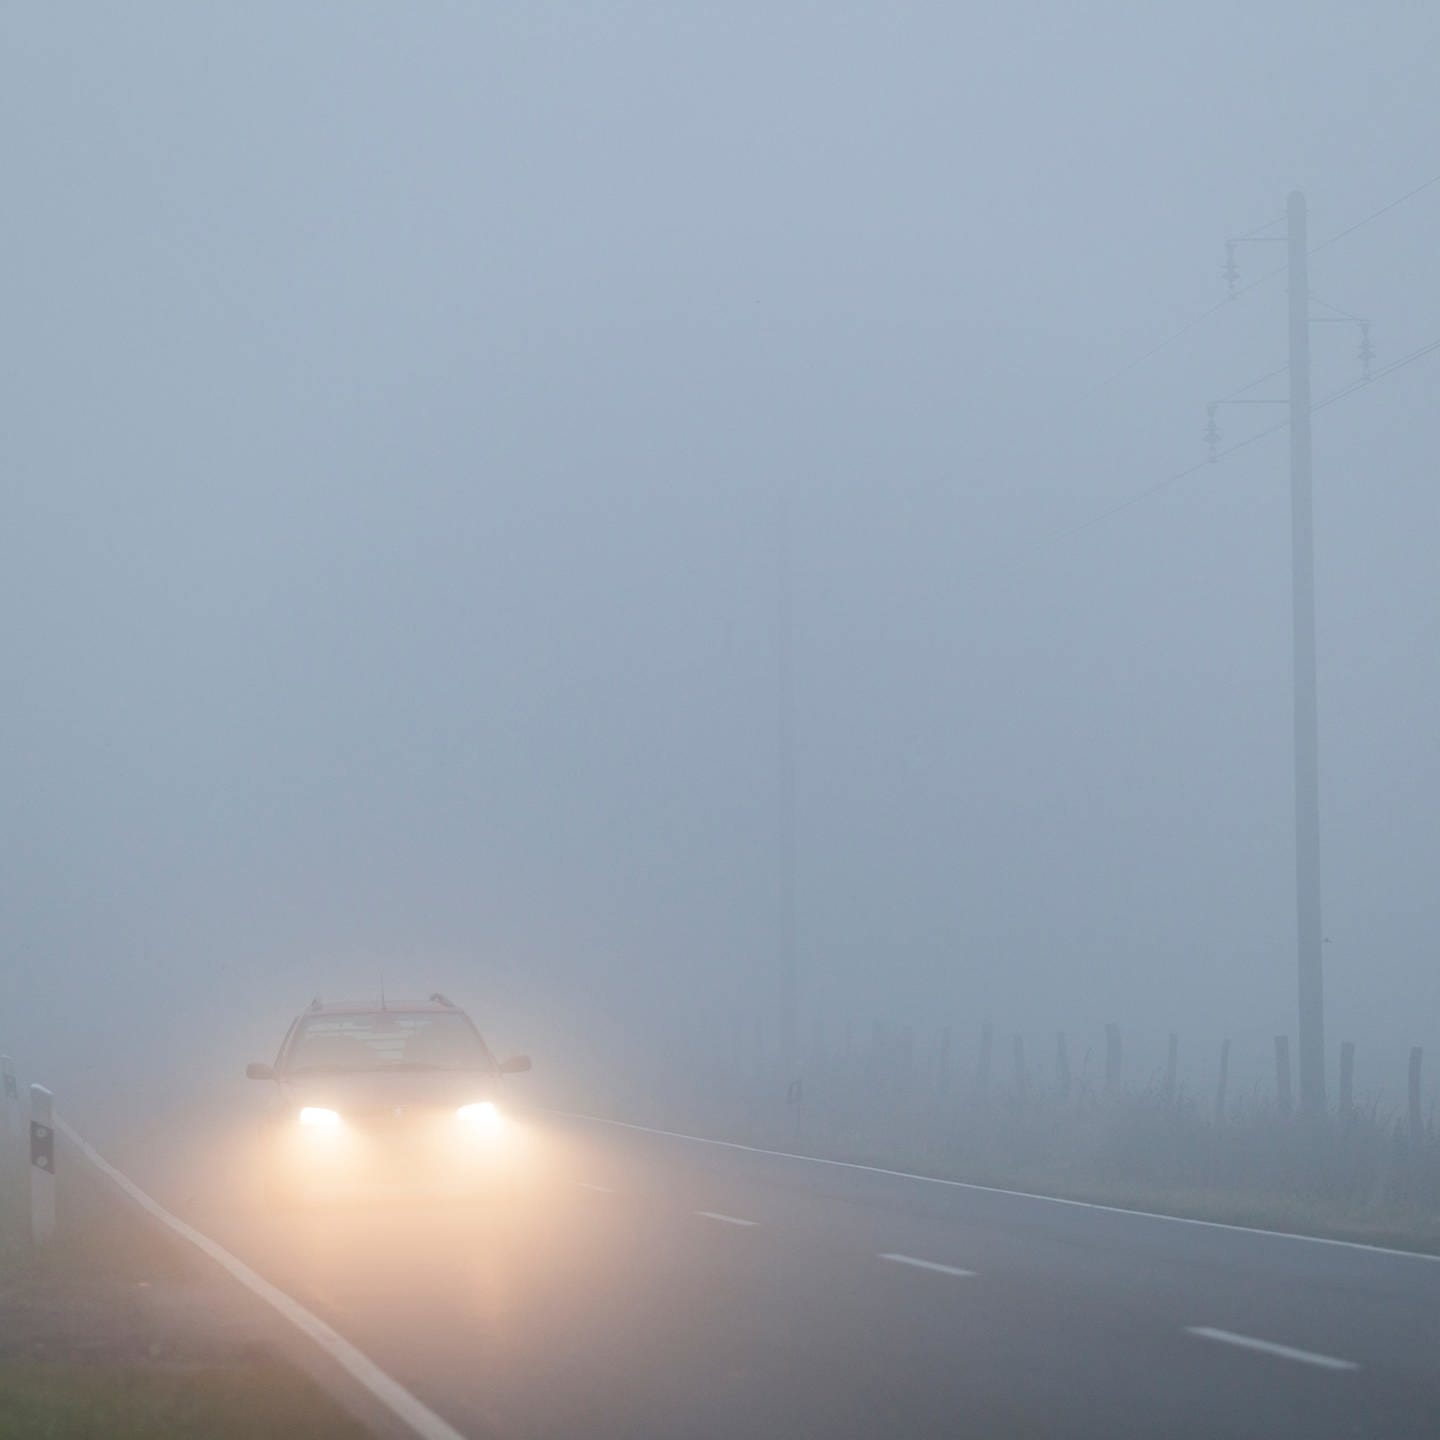 Eingeschränkte Sicht  Das sollten Sie bei Fahrten im Nebel unbedingt  beachten - SWR1 RP - SWR1